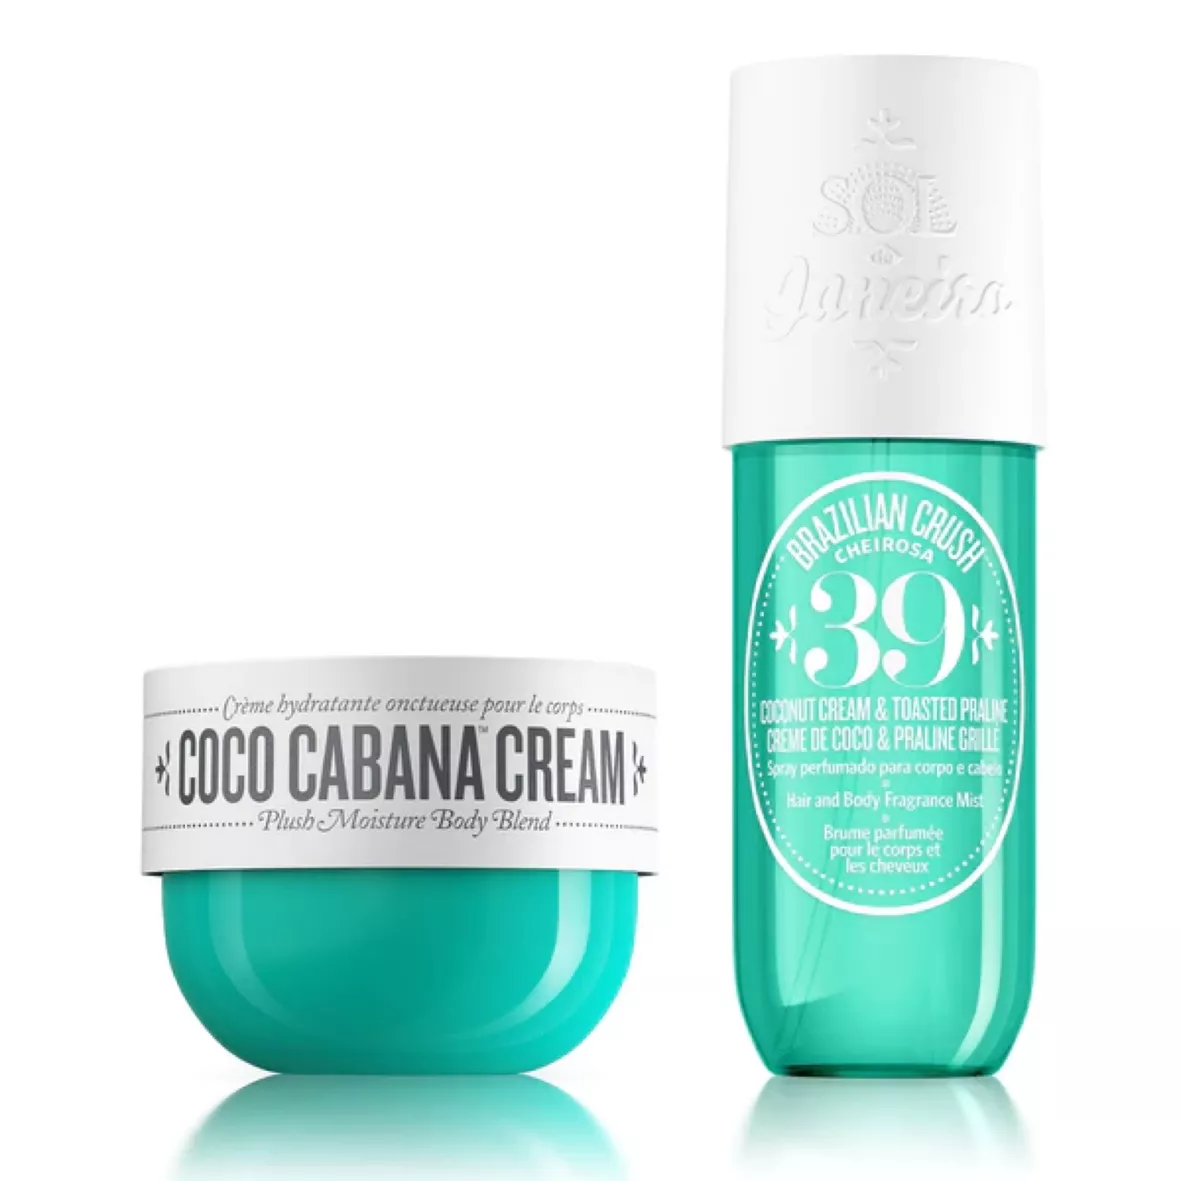 SOL DE JANEIRO Coco Cabana Jet Set Cheirosa 39 - Cream,Fragrance  Mist,Shower Gel